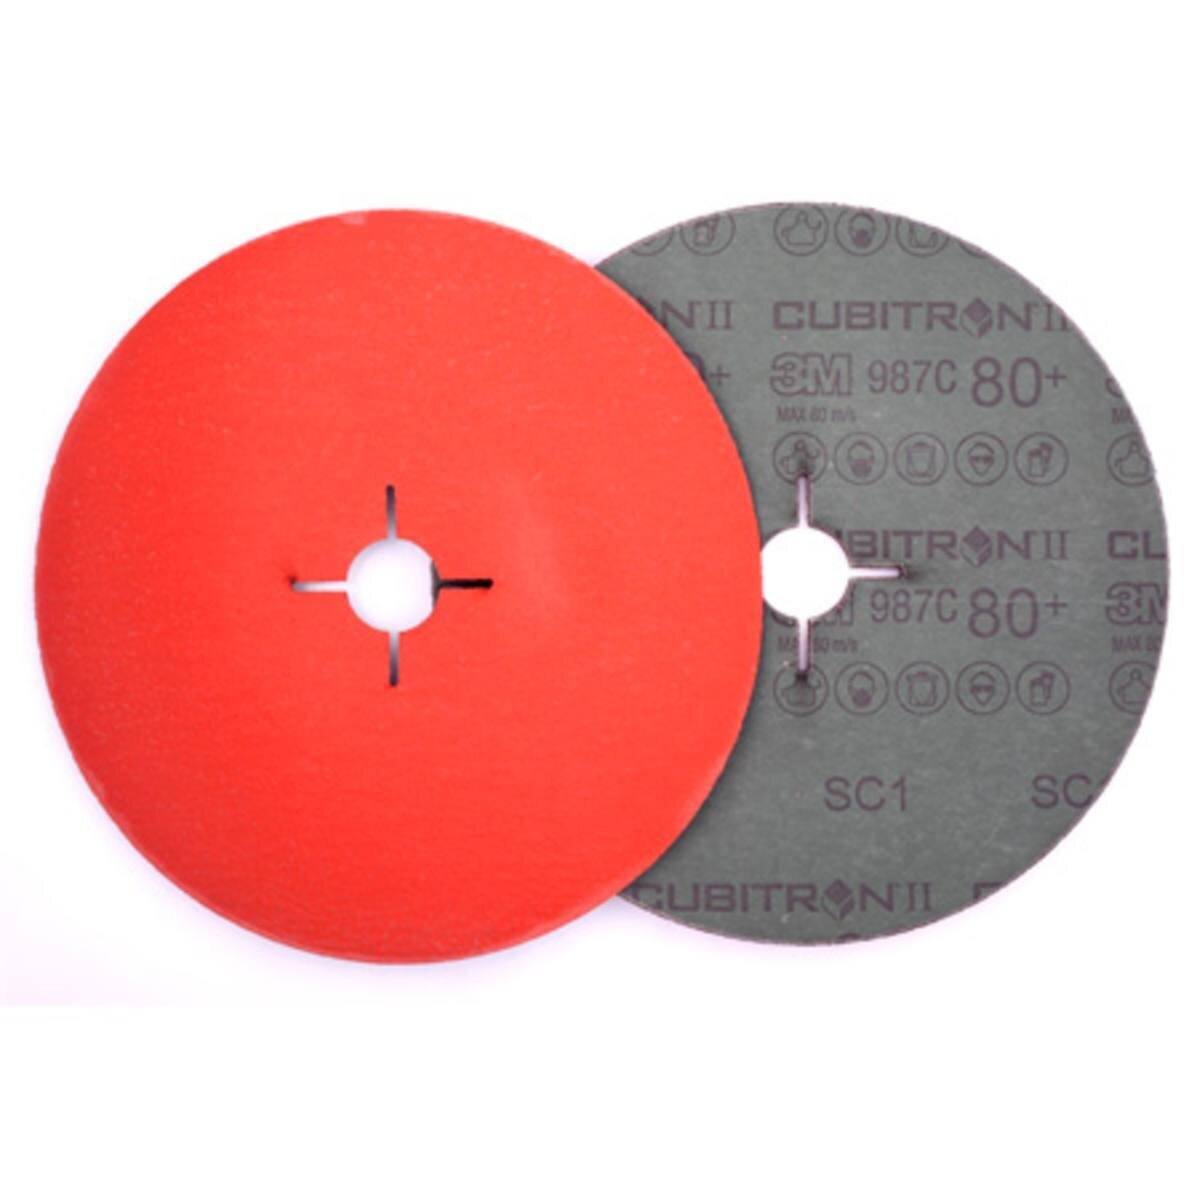 3M Cubitron II Fibre disc 987C, 180 mm, 22.23 mm, 60+ #464822